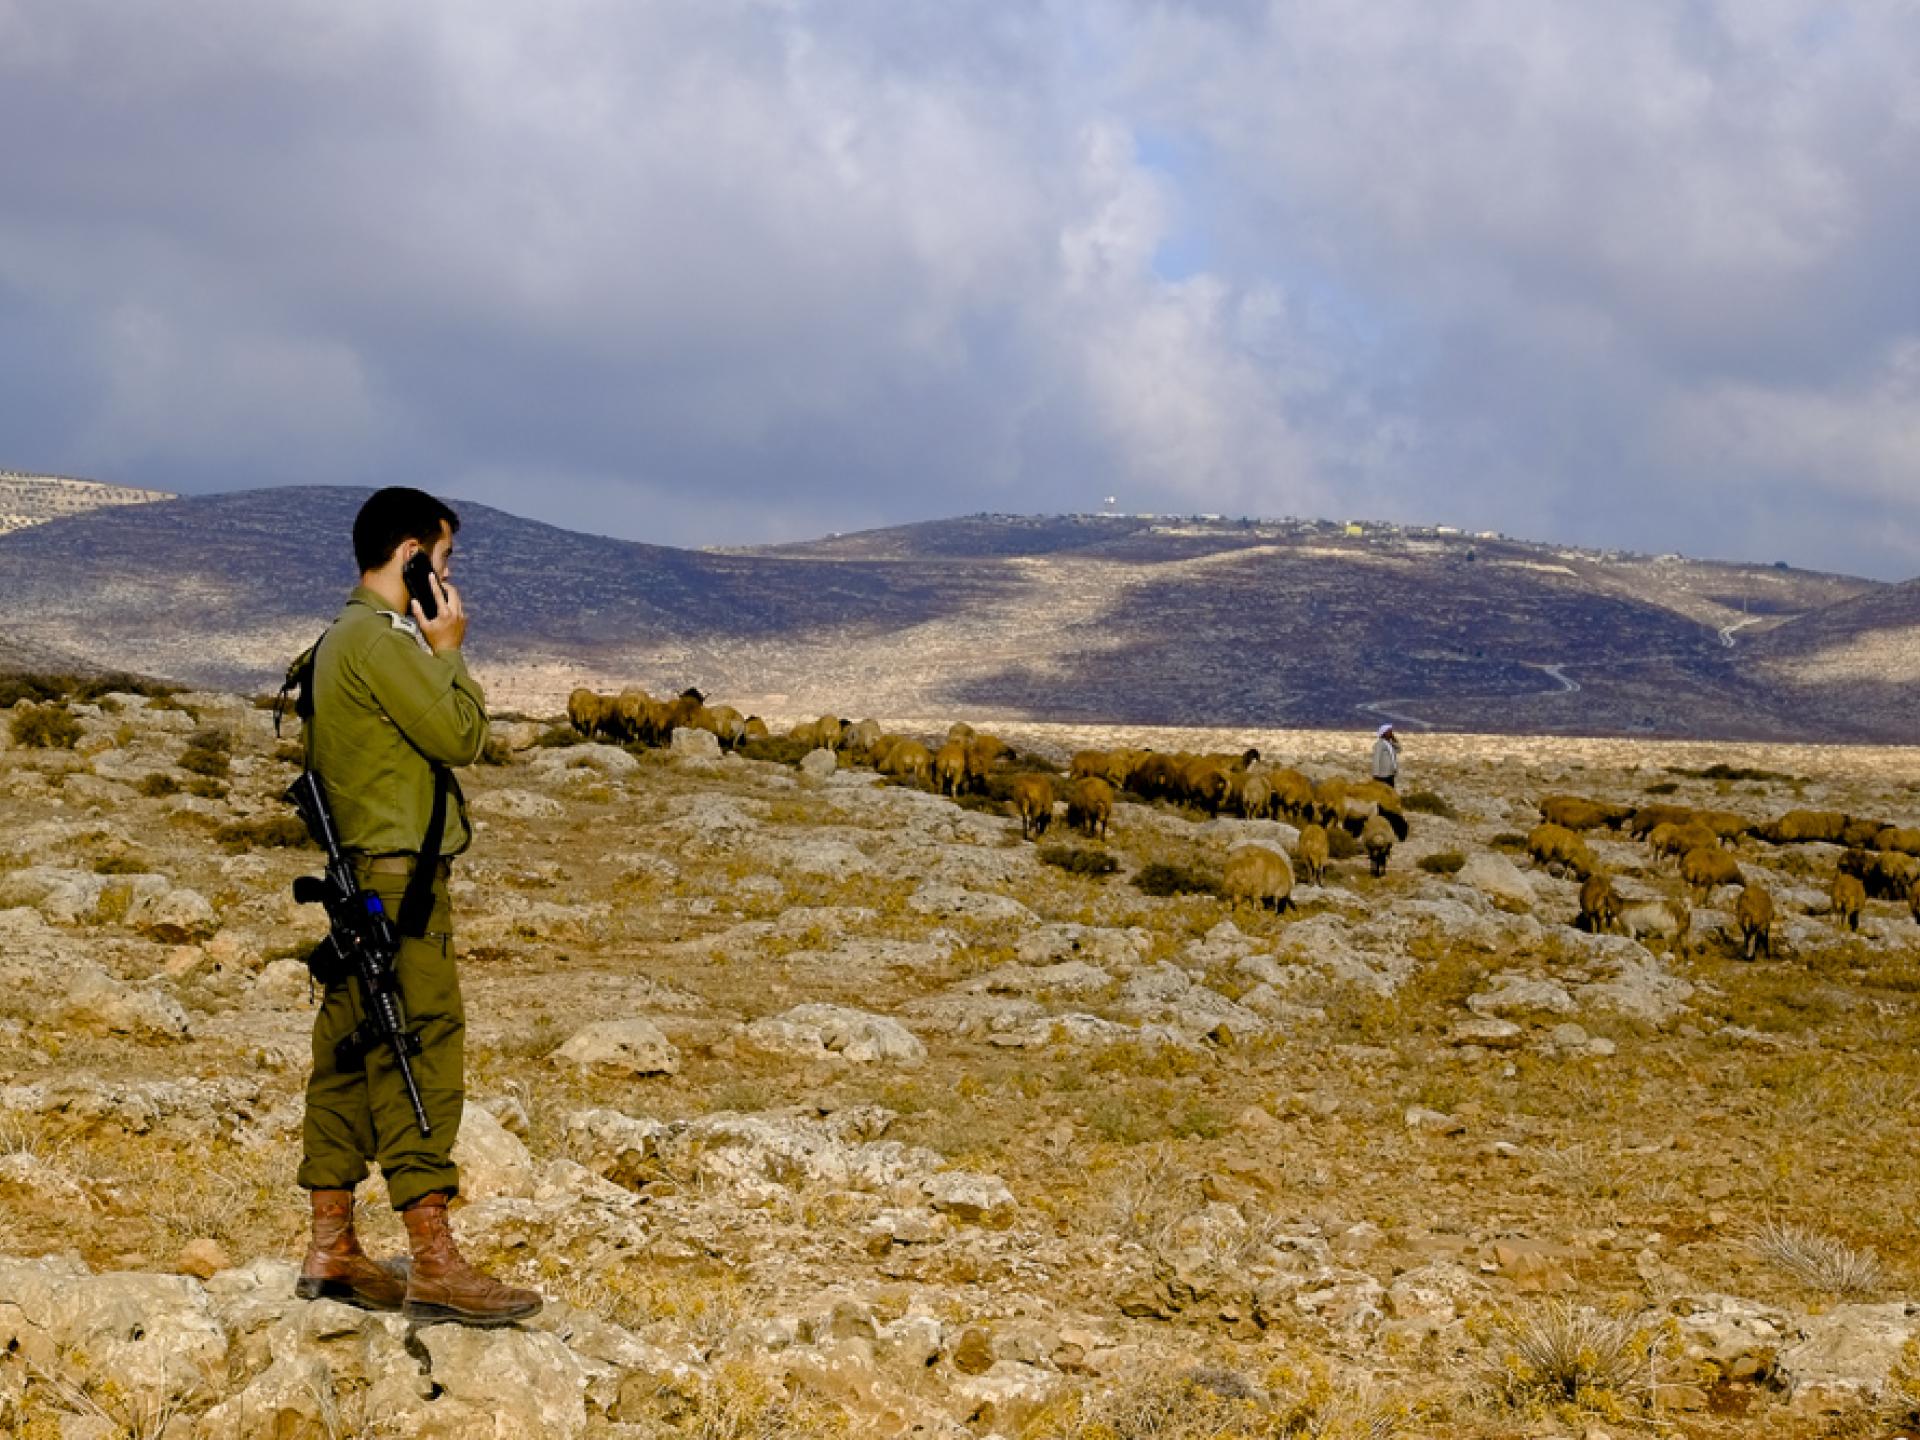 בקעת הירדן, עדר ורועה פלסטינים וחייל צה"ל שנקרא לסלק אותם מהמקום